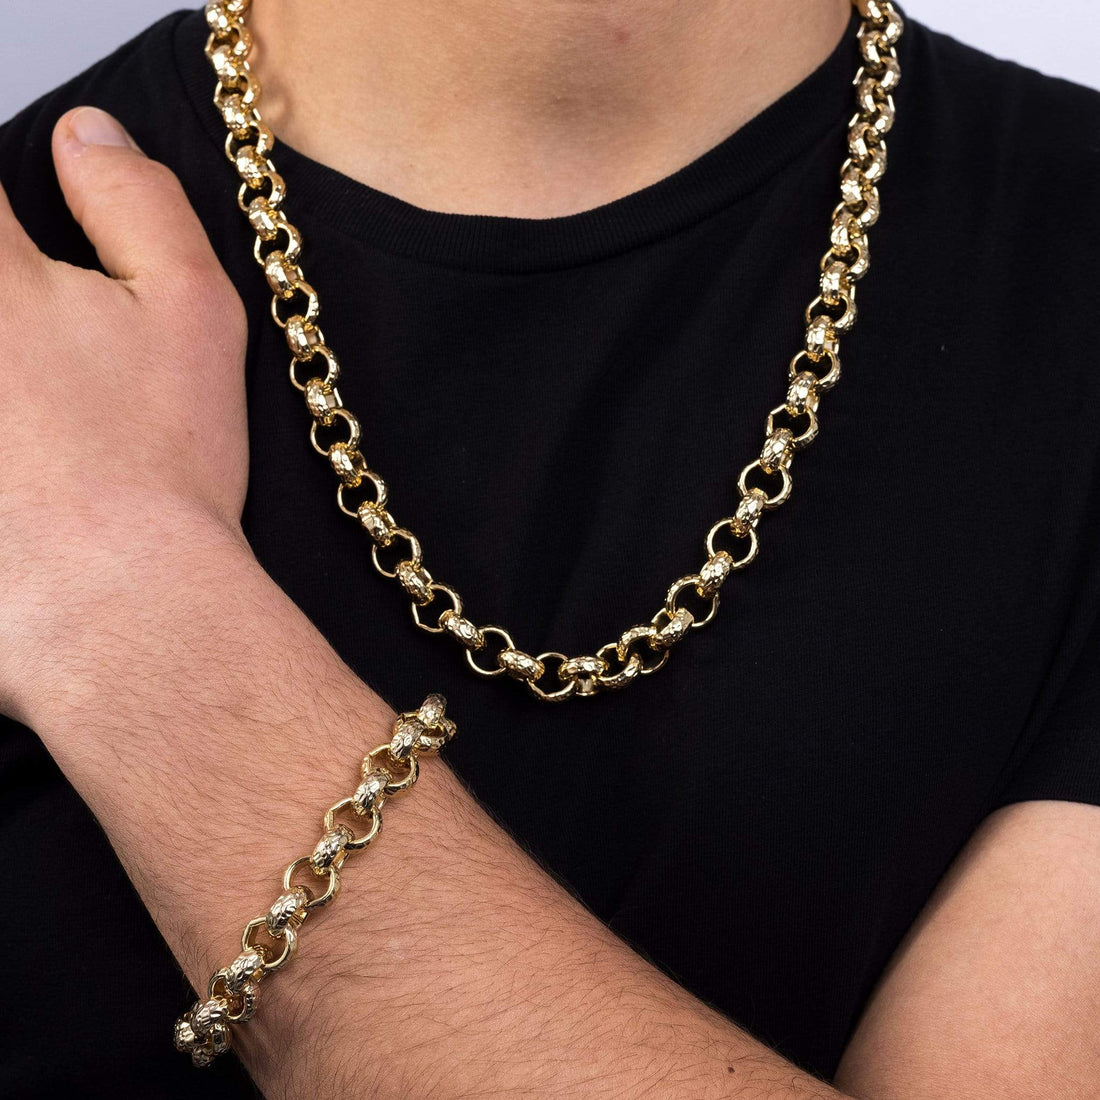 18k Gold-Bonded, Matching Set Chains, Bracelets & Sets PATTERNED BELCHER 12MM SET